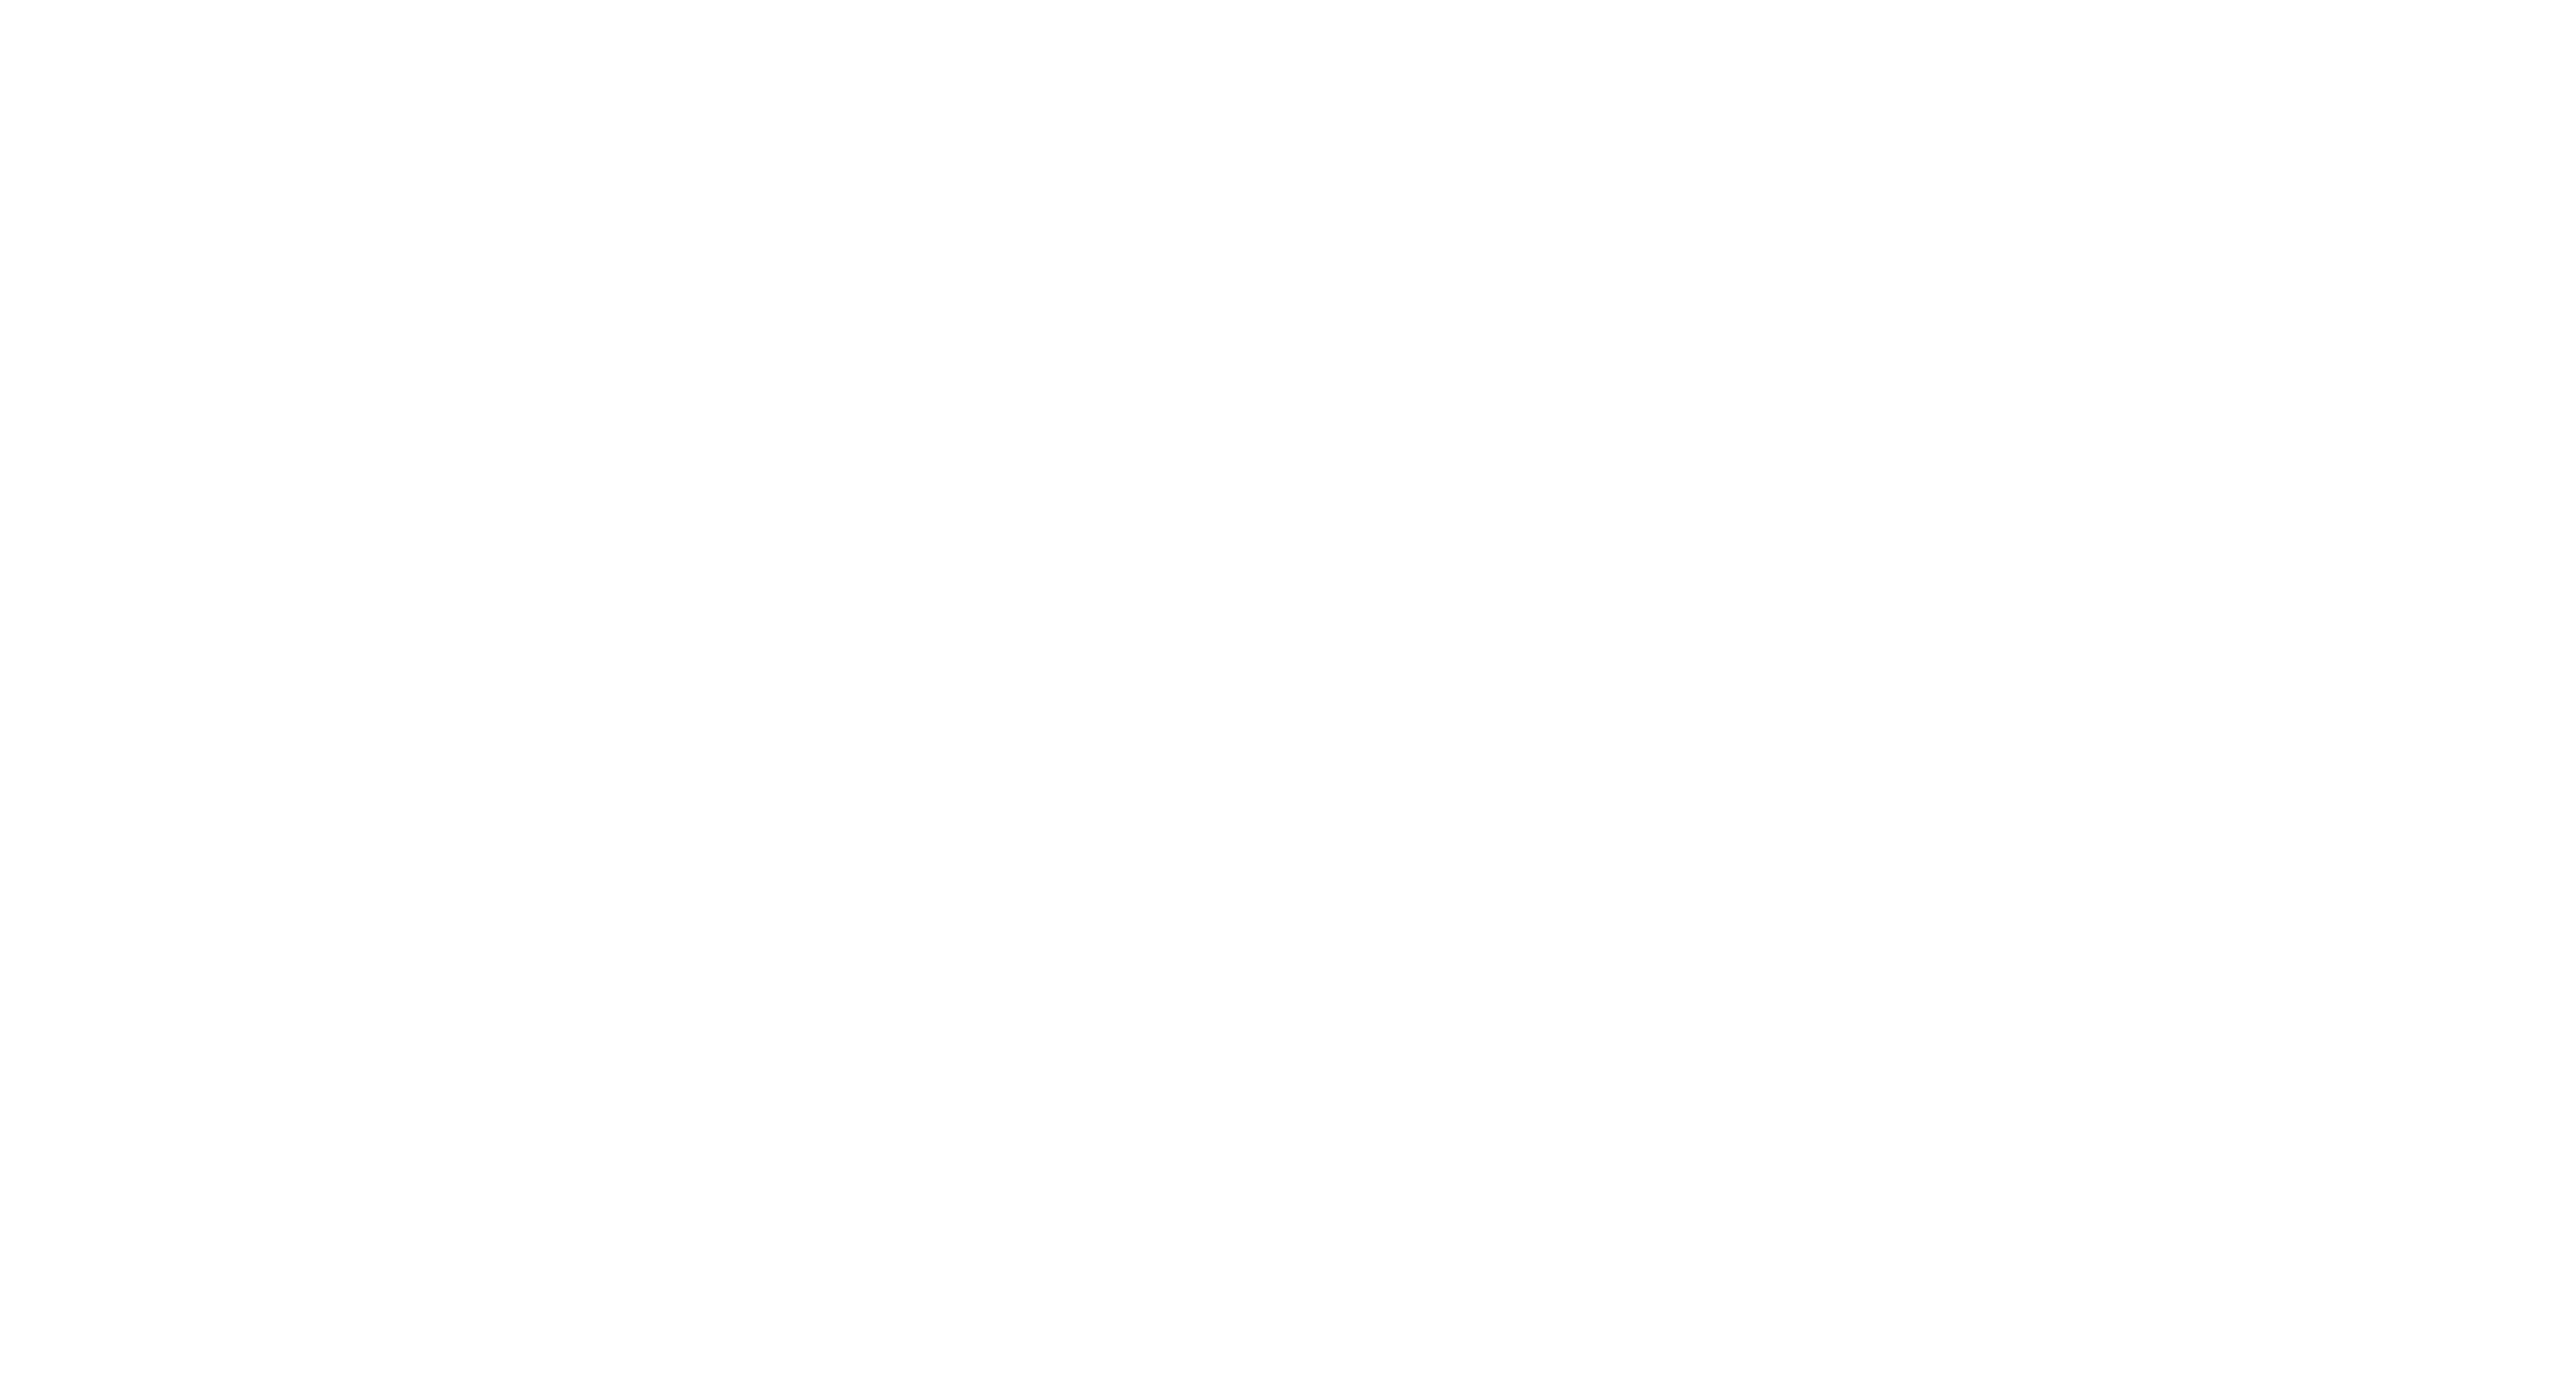 cleanup crew symbol